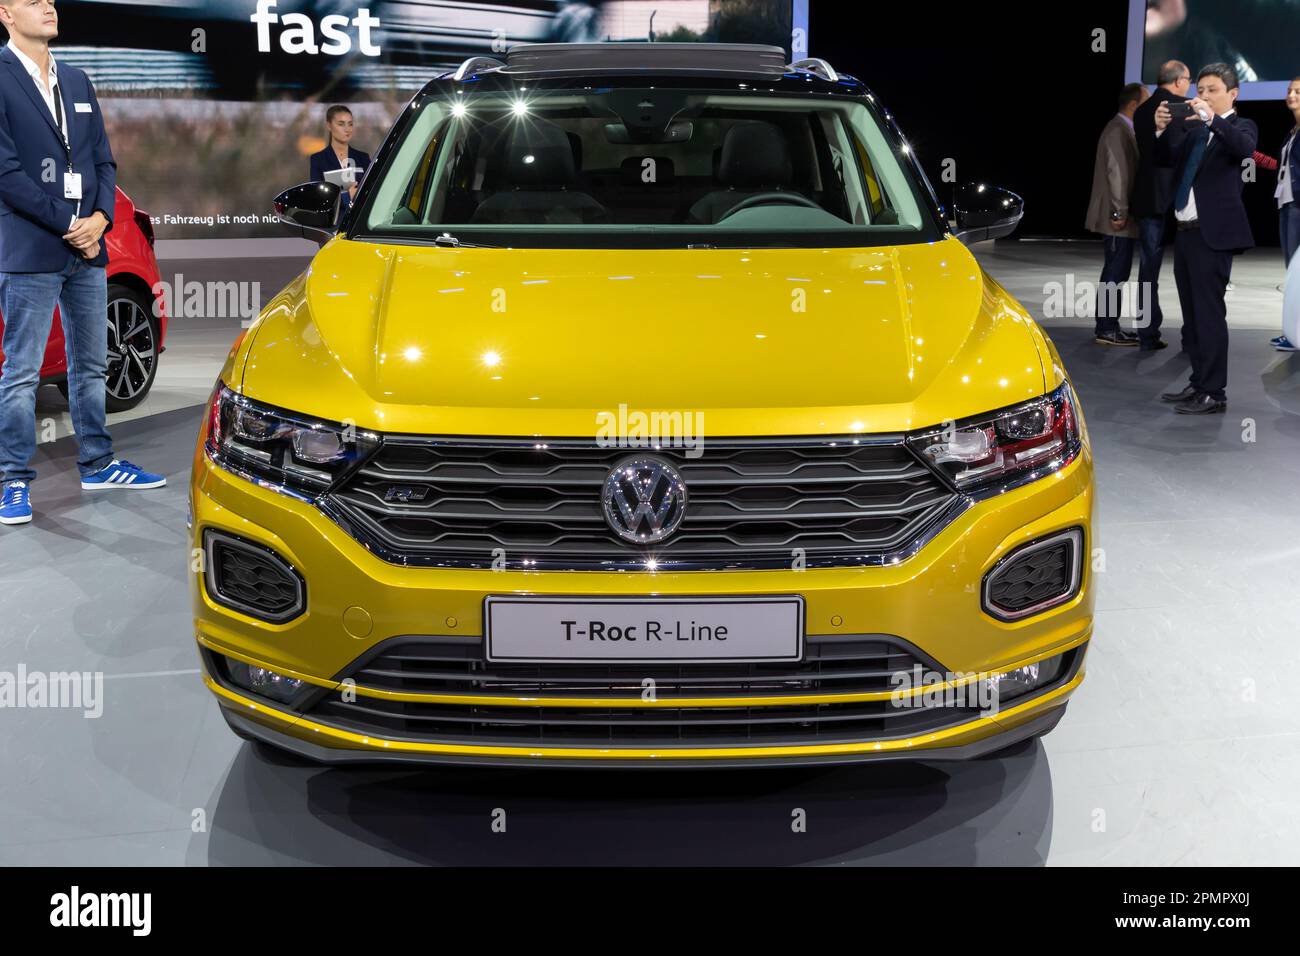 Volkswagen T-Roc R-Line au salon de l'automobile IAA de Francfort. Allemagne - 12 septembre 2017. Banque D'Images